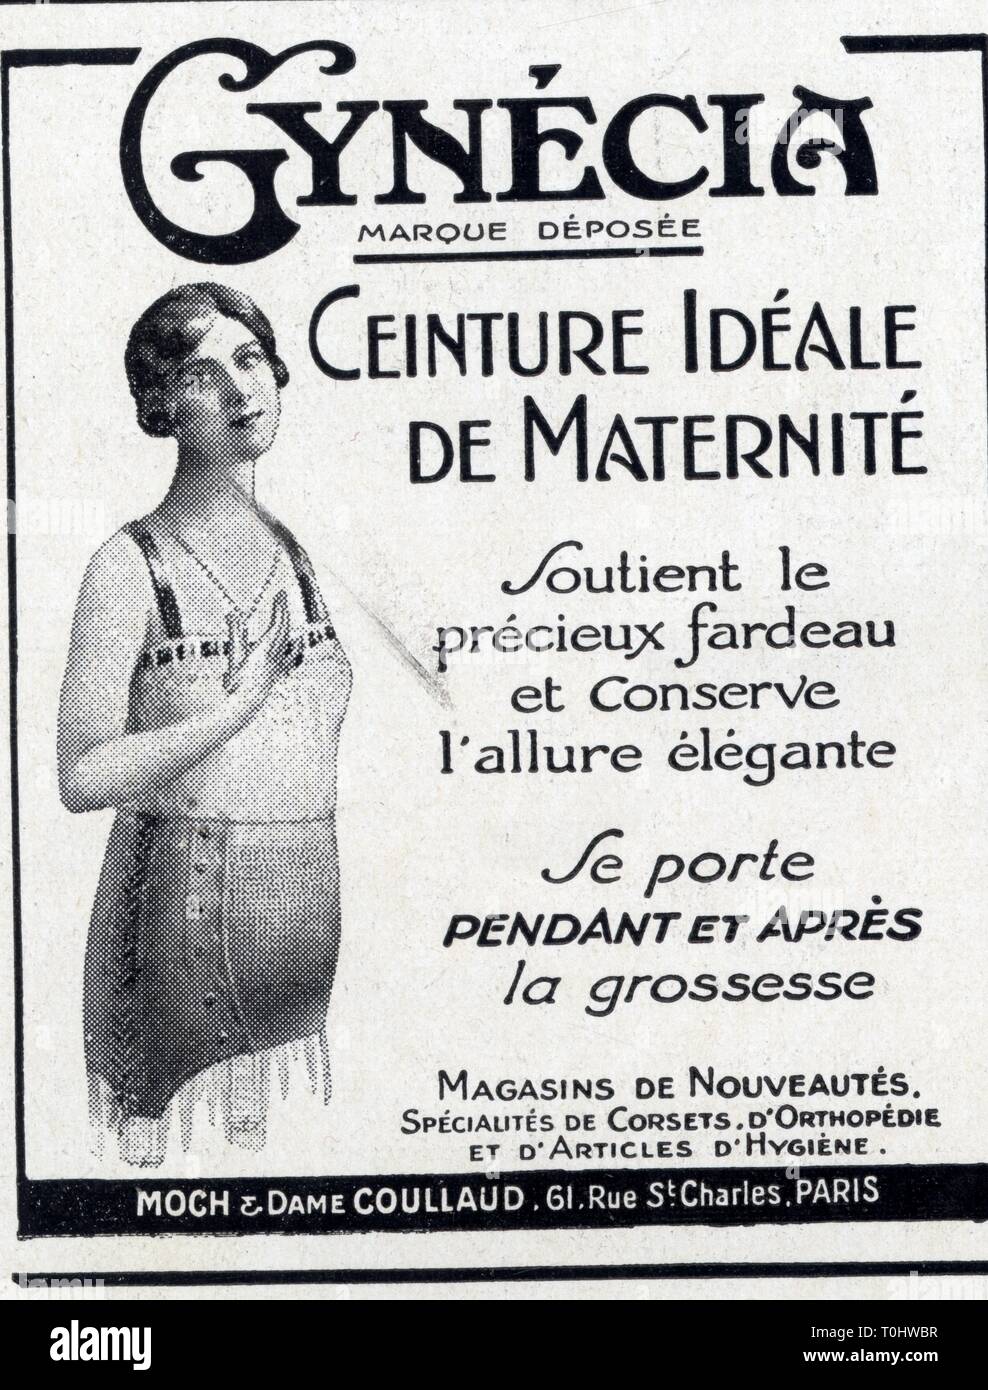 Publicité ancienne. 1 mars 1930. Gynécia. Ceinture idéale de maternité Stock Photo